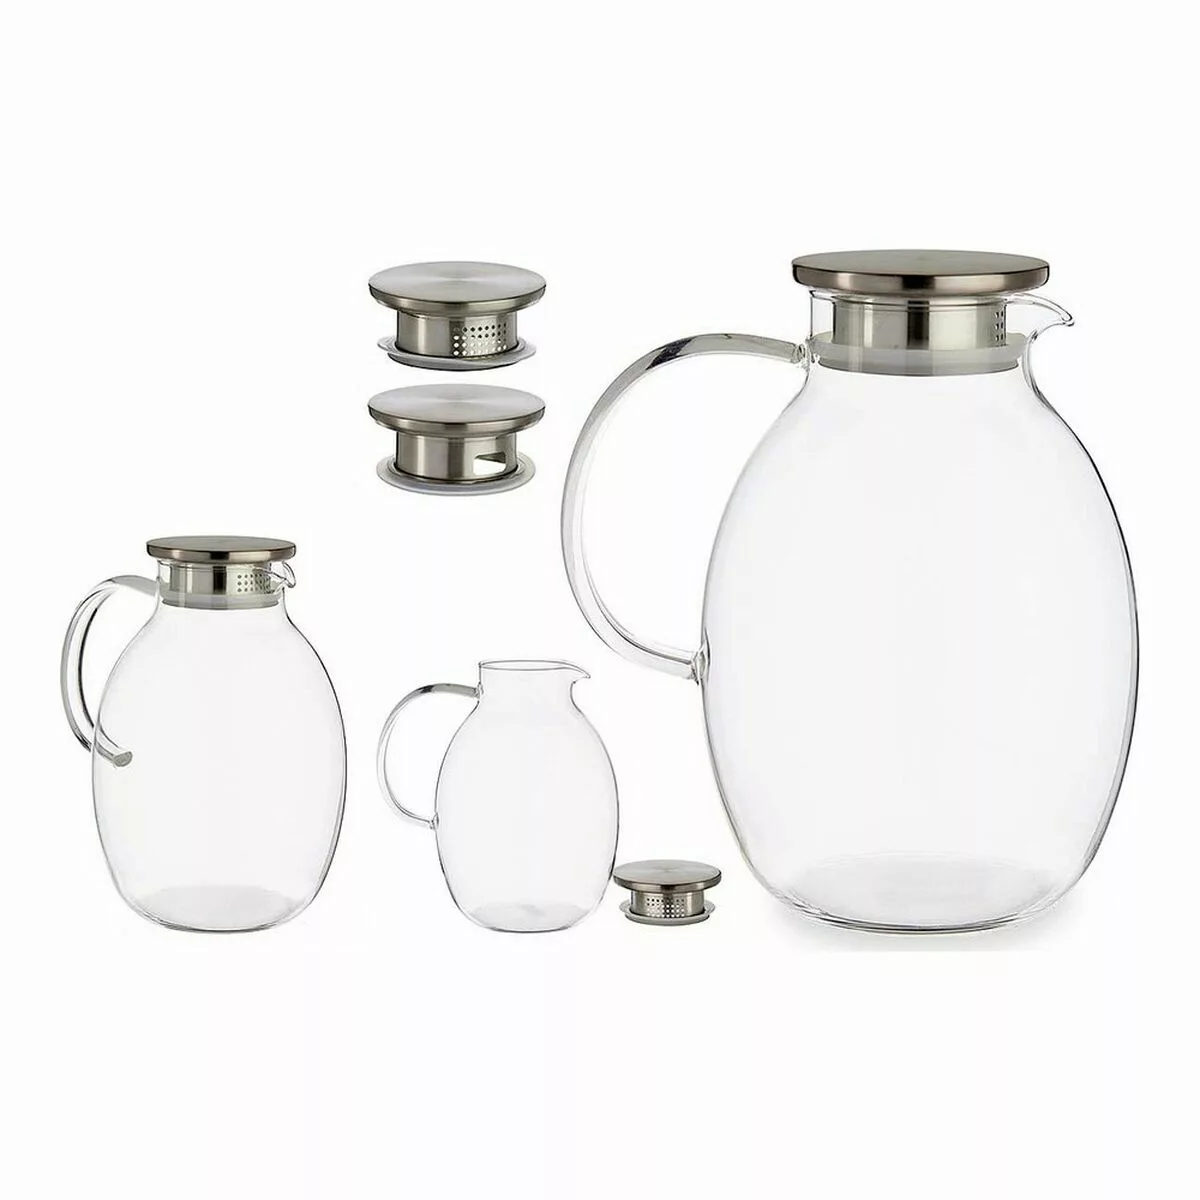 Kanne Mit Deckel 2,5 L Durchsichtig Borosilikatglas (15,5 X 22 X 20 Cm) günstig online kaufen